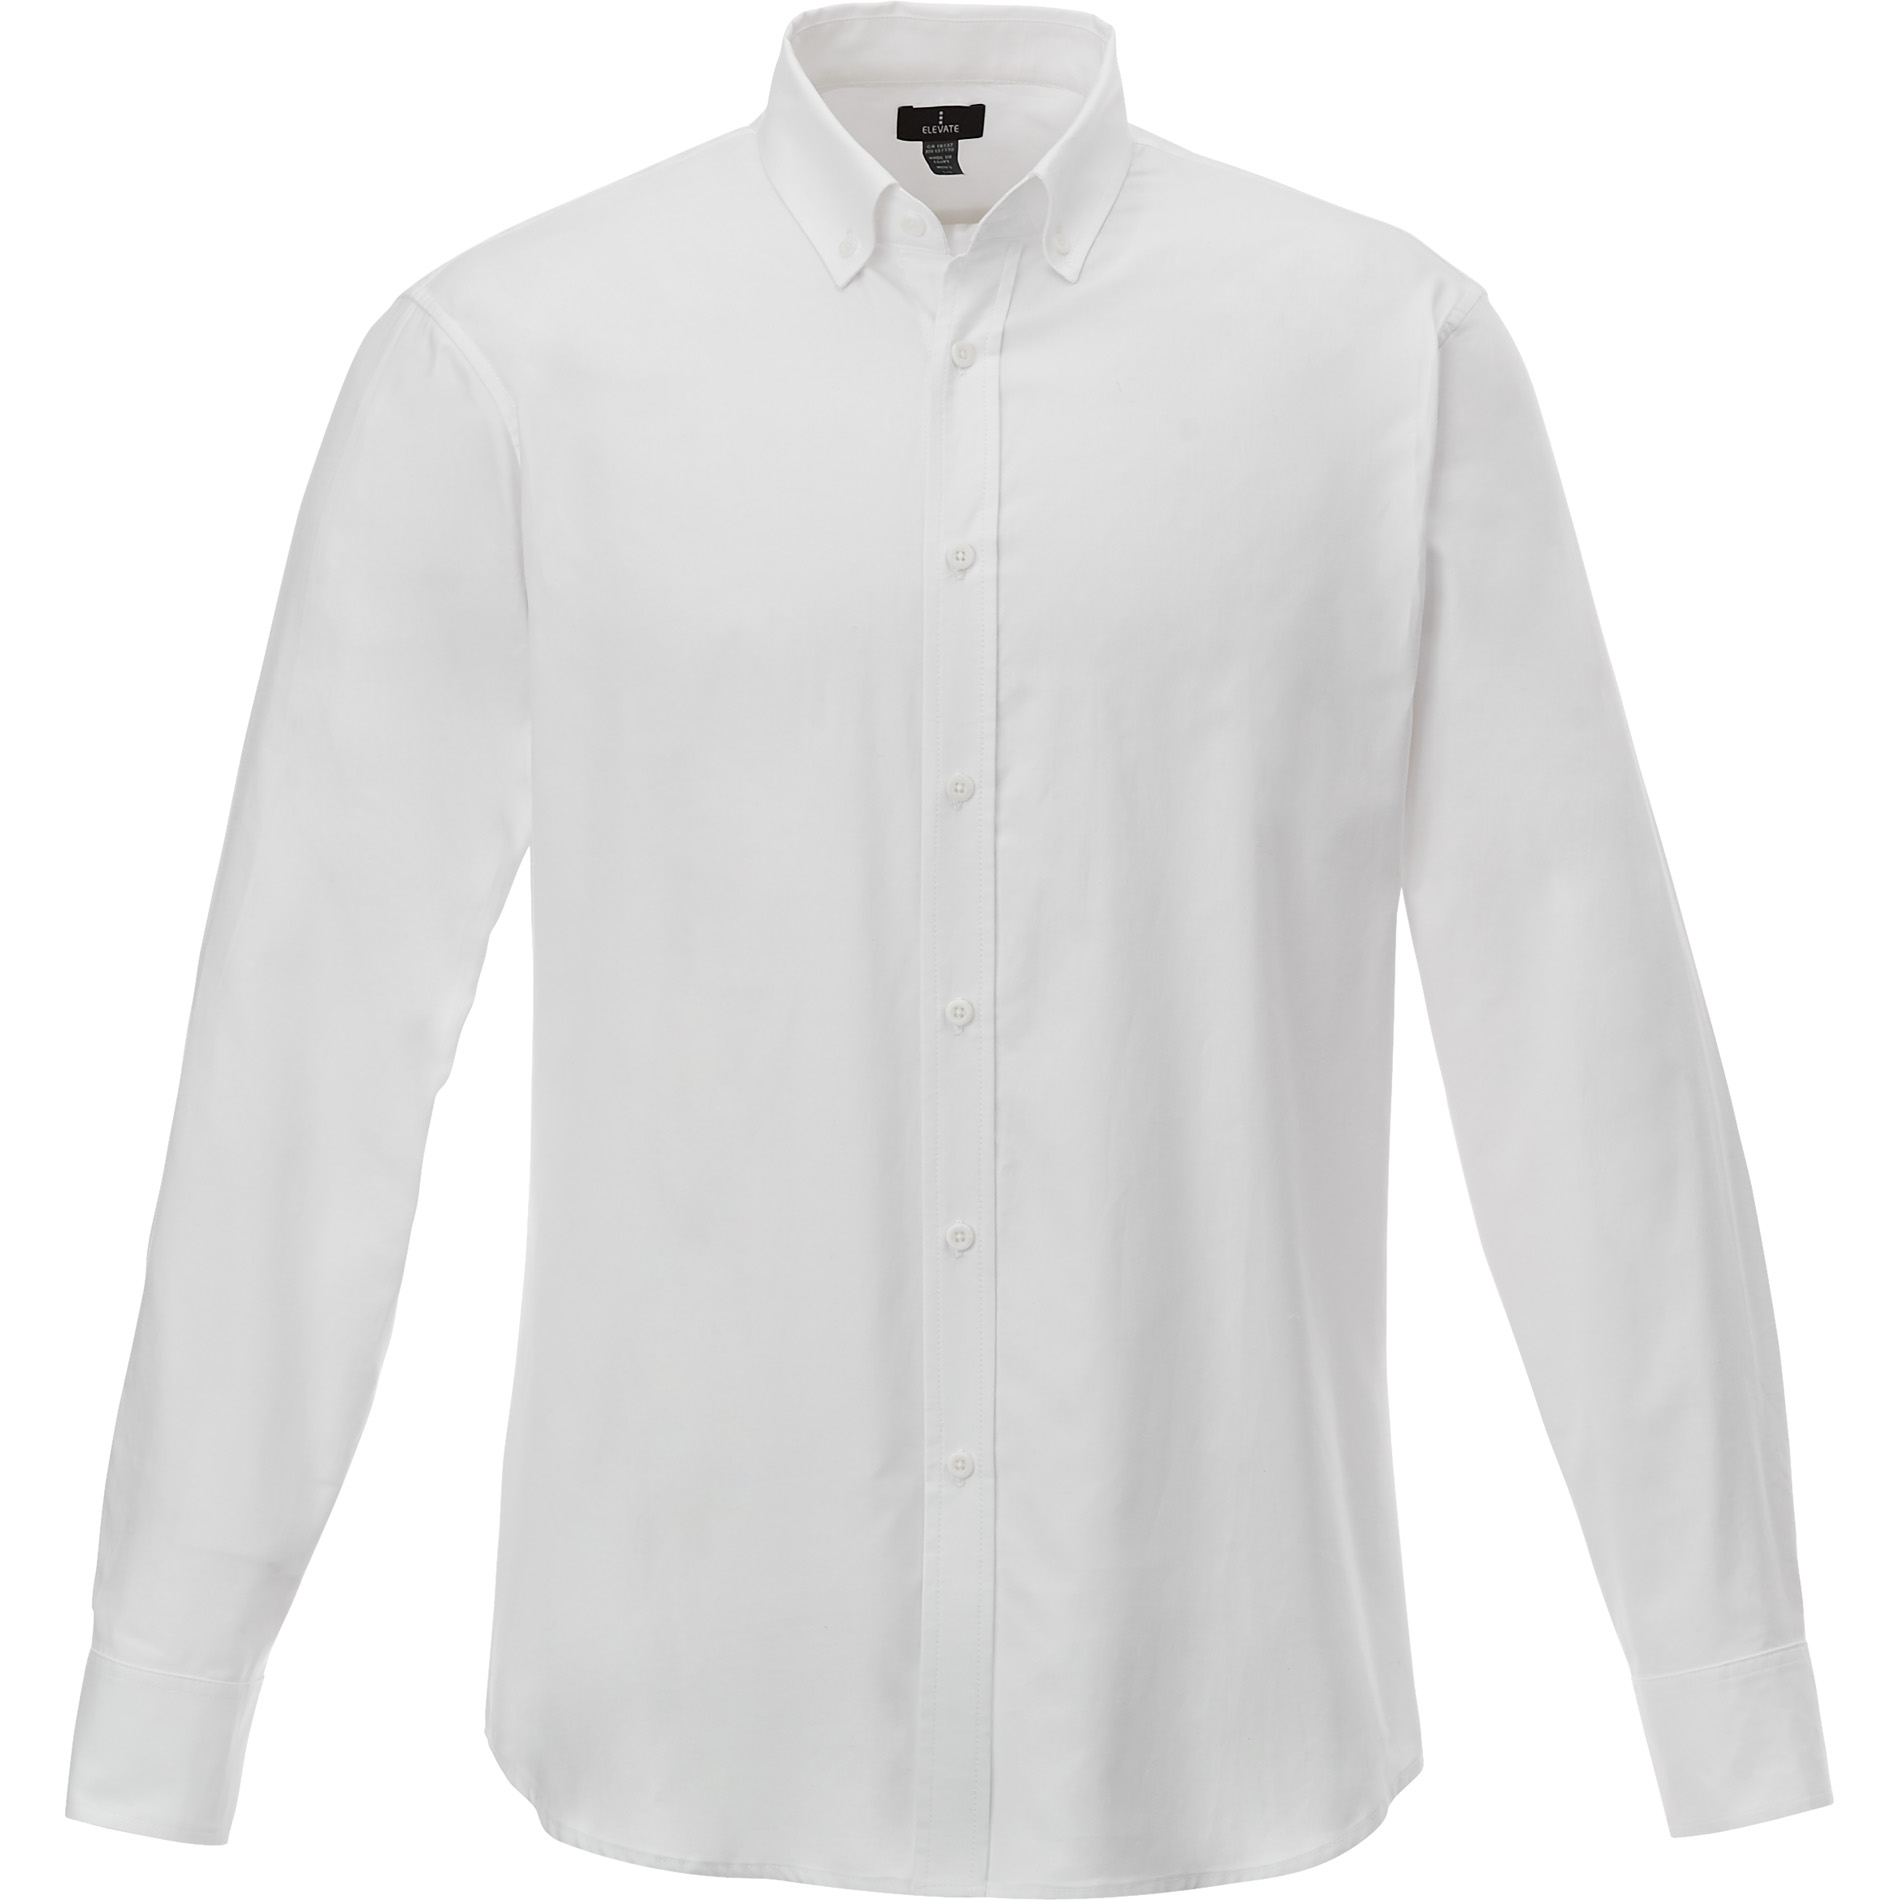 Trimark TM17701 - Men's IRVINE Oxford Long Sleeve Shirt